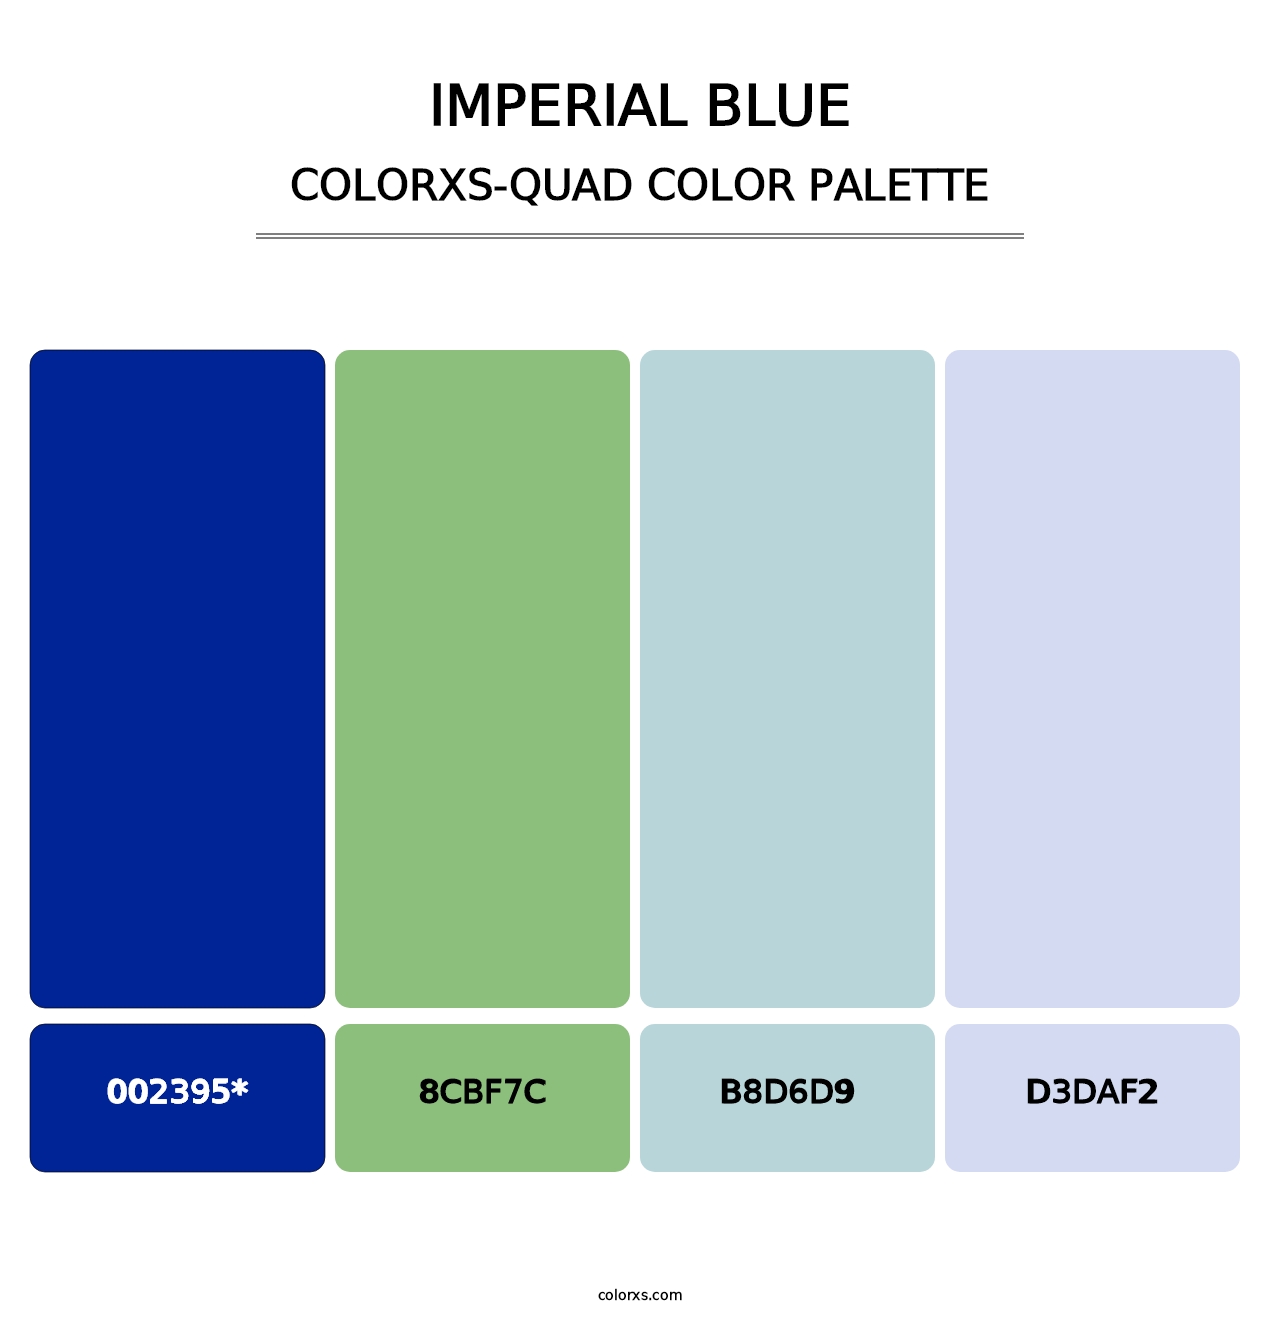 Imperial Blue - Colorxs Quad Palette